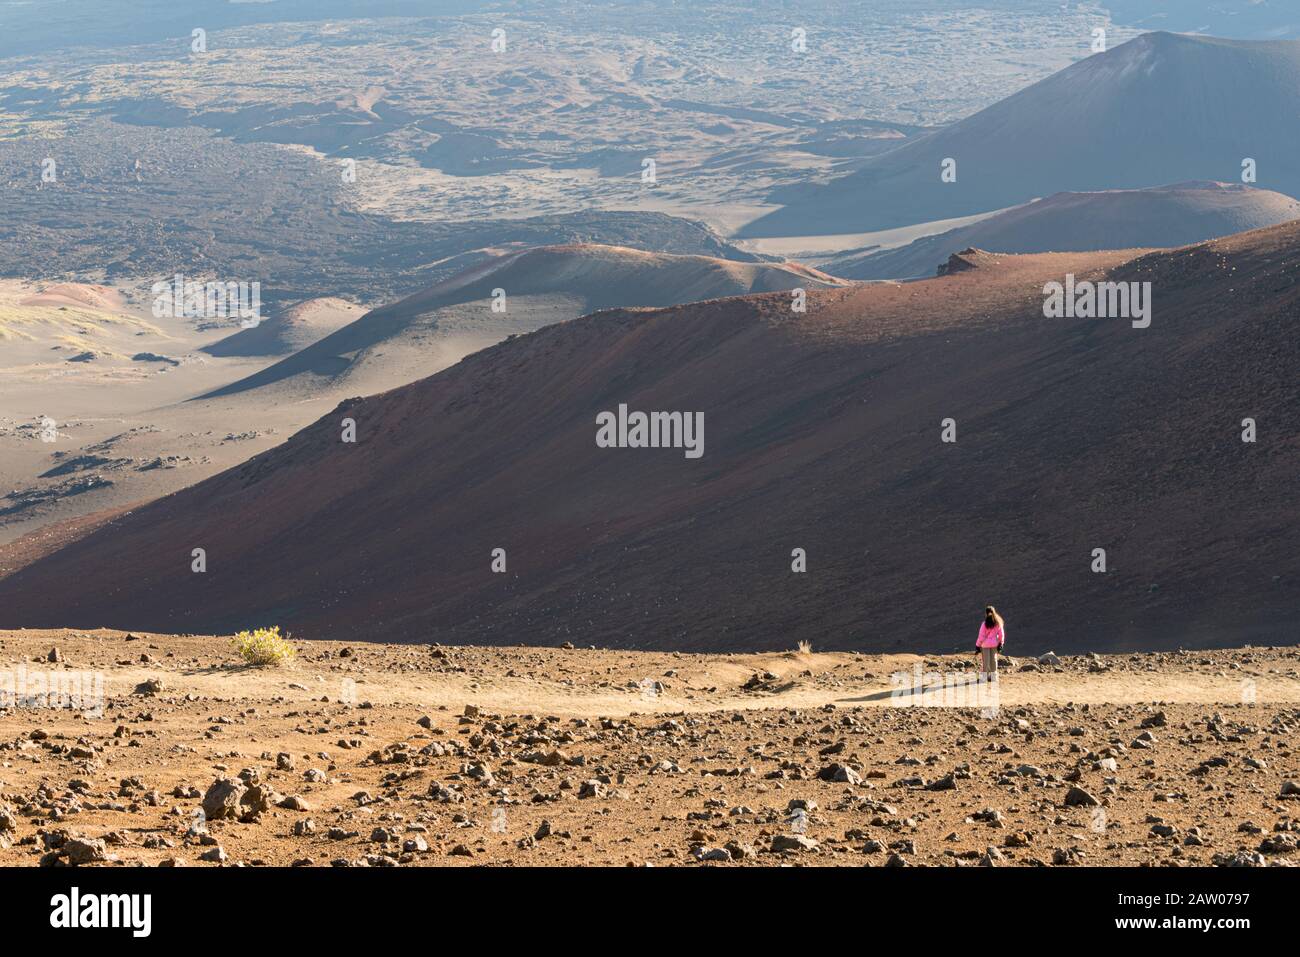 Ein einsamer weiblicher Wanderer blickt auf eine aride, unbezeihliche Landschaft. Stockfoto